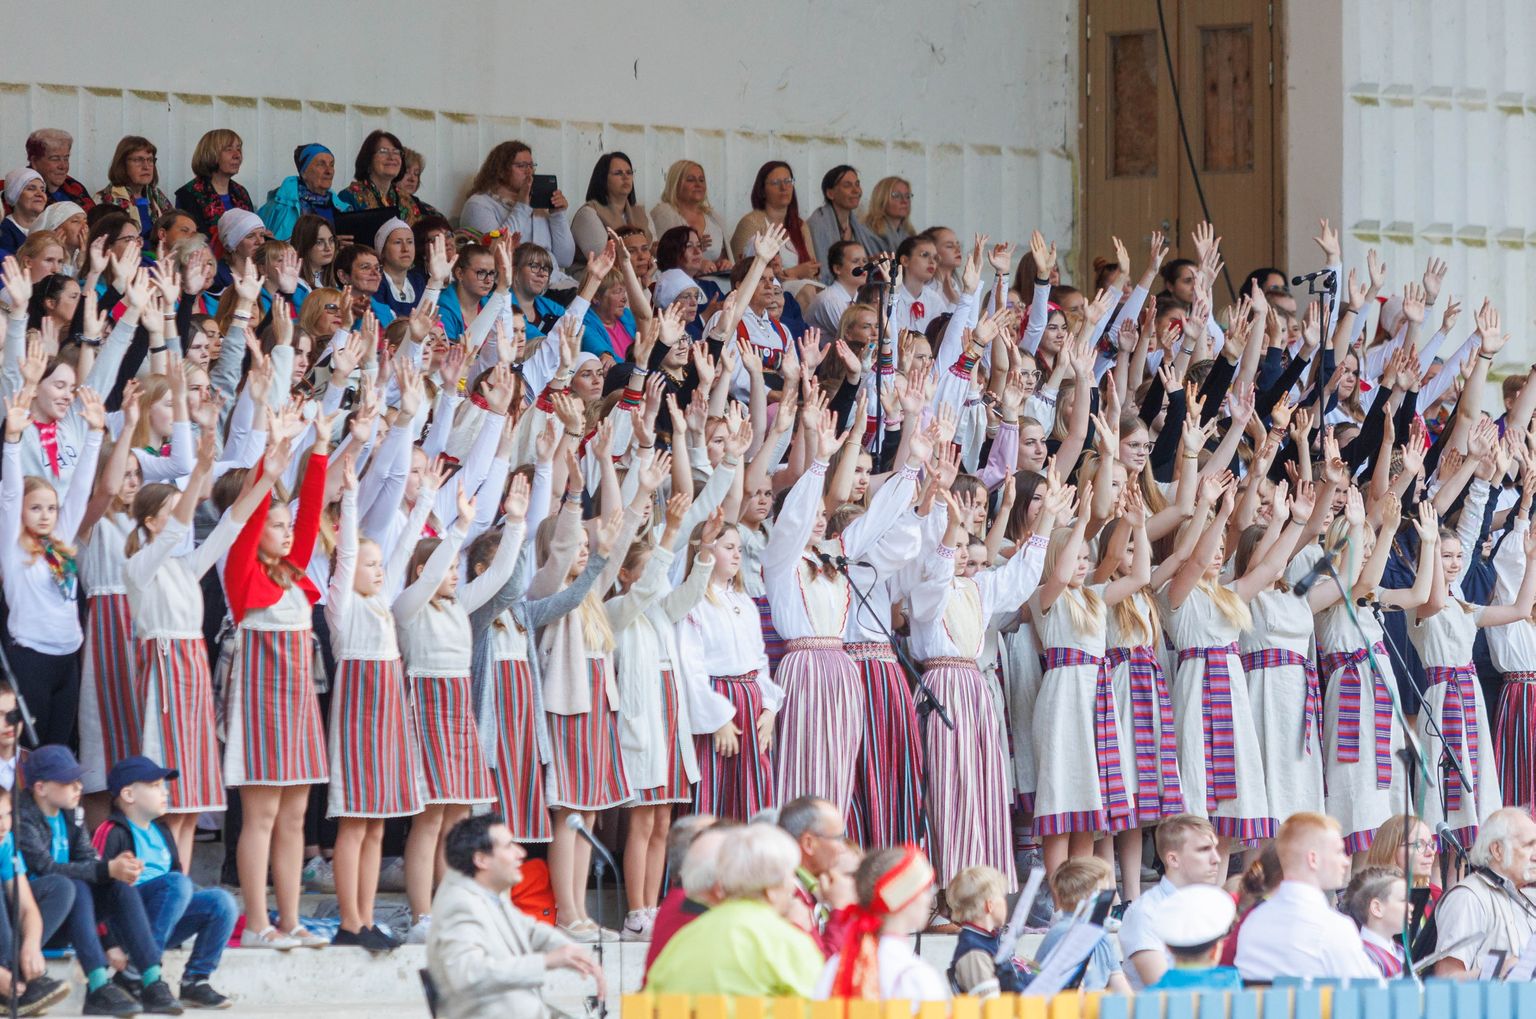 Võru maakonna laulu- ja tantsupidu "Võta aigu", millel osales üle 2000 esineja.